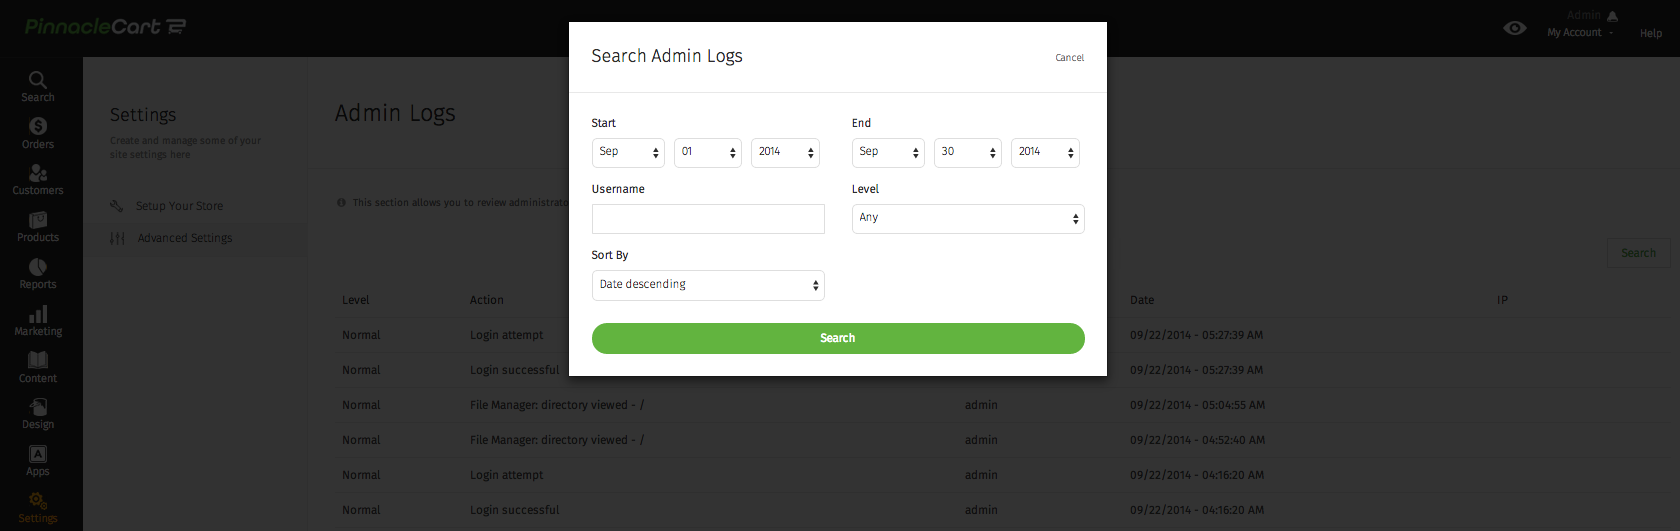 search admin logs